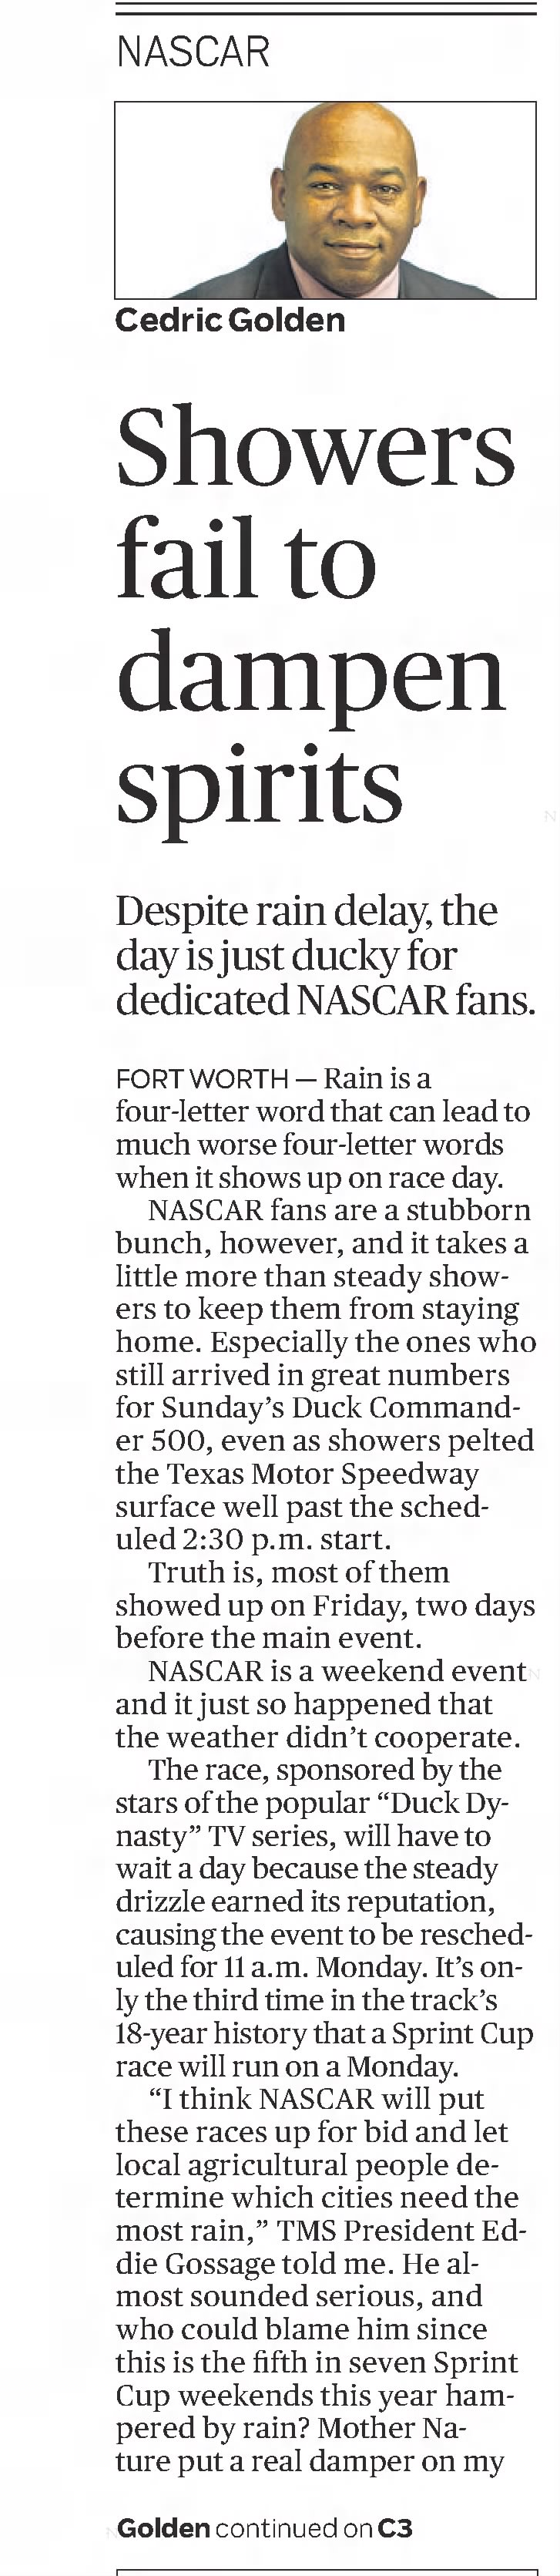 Showers fail to dampen spirits (Part 1)